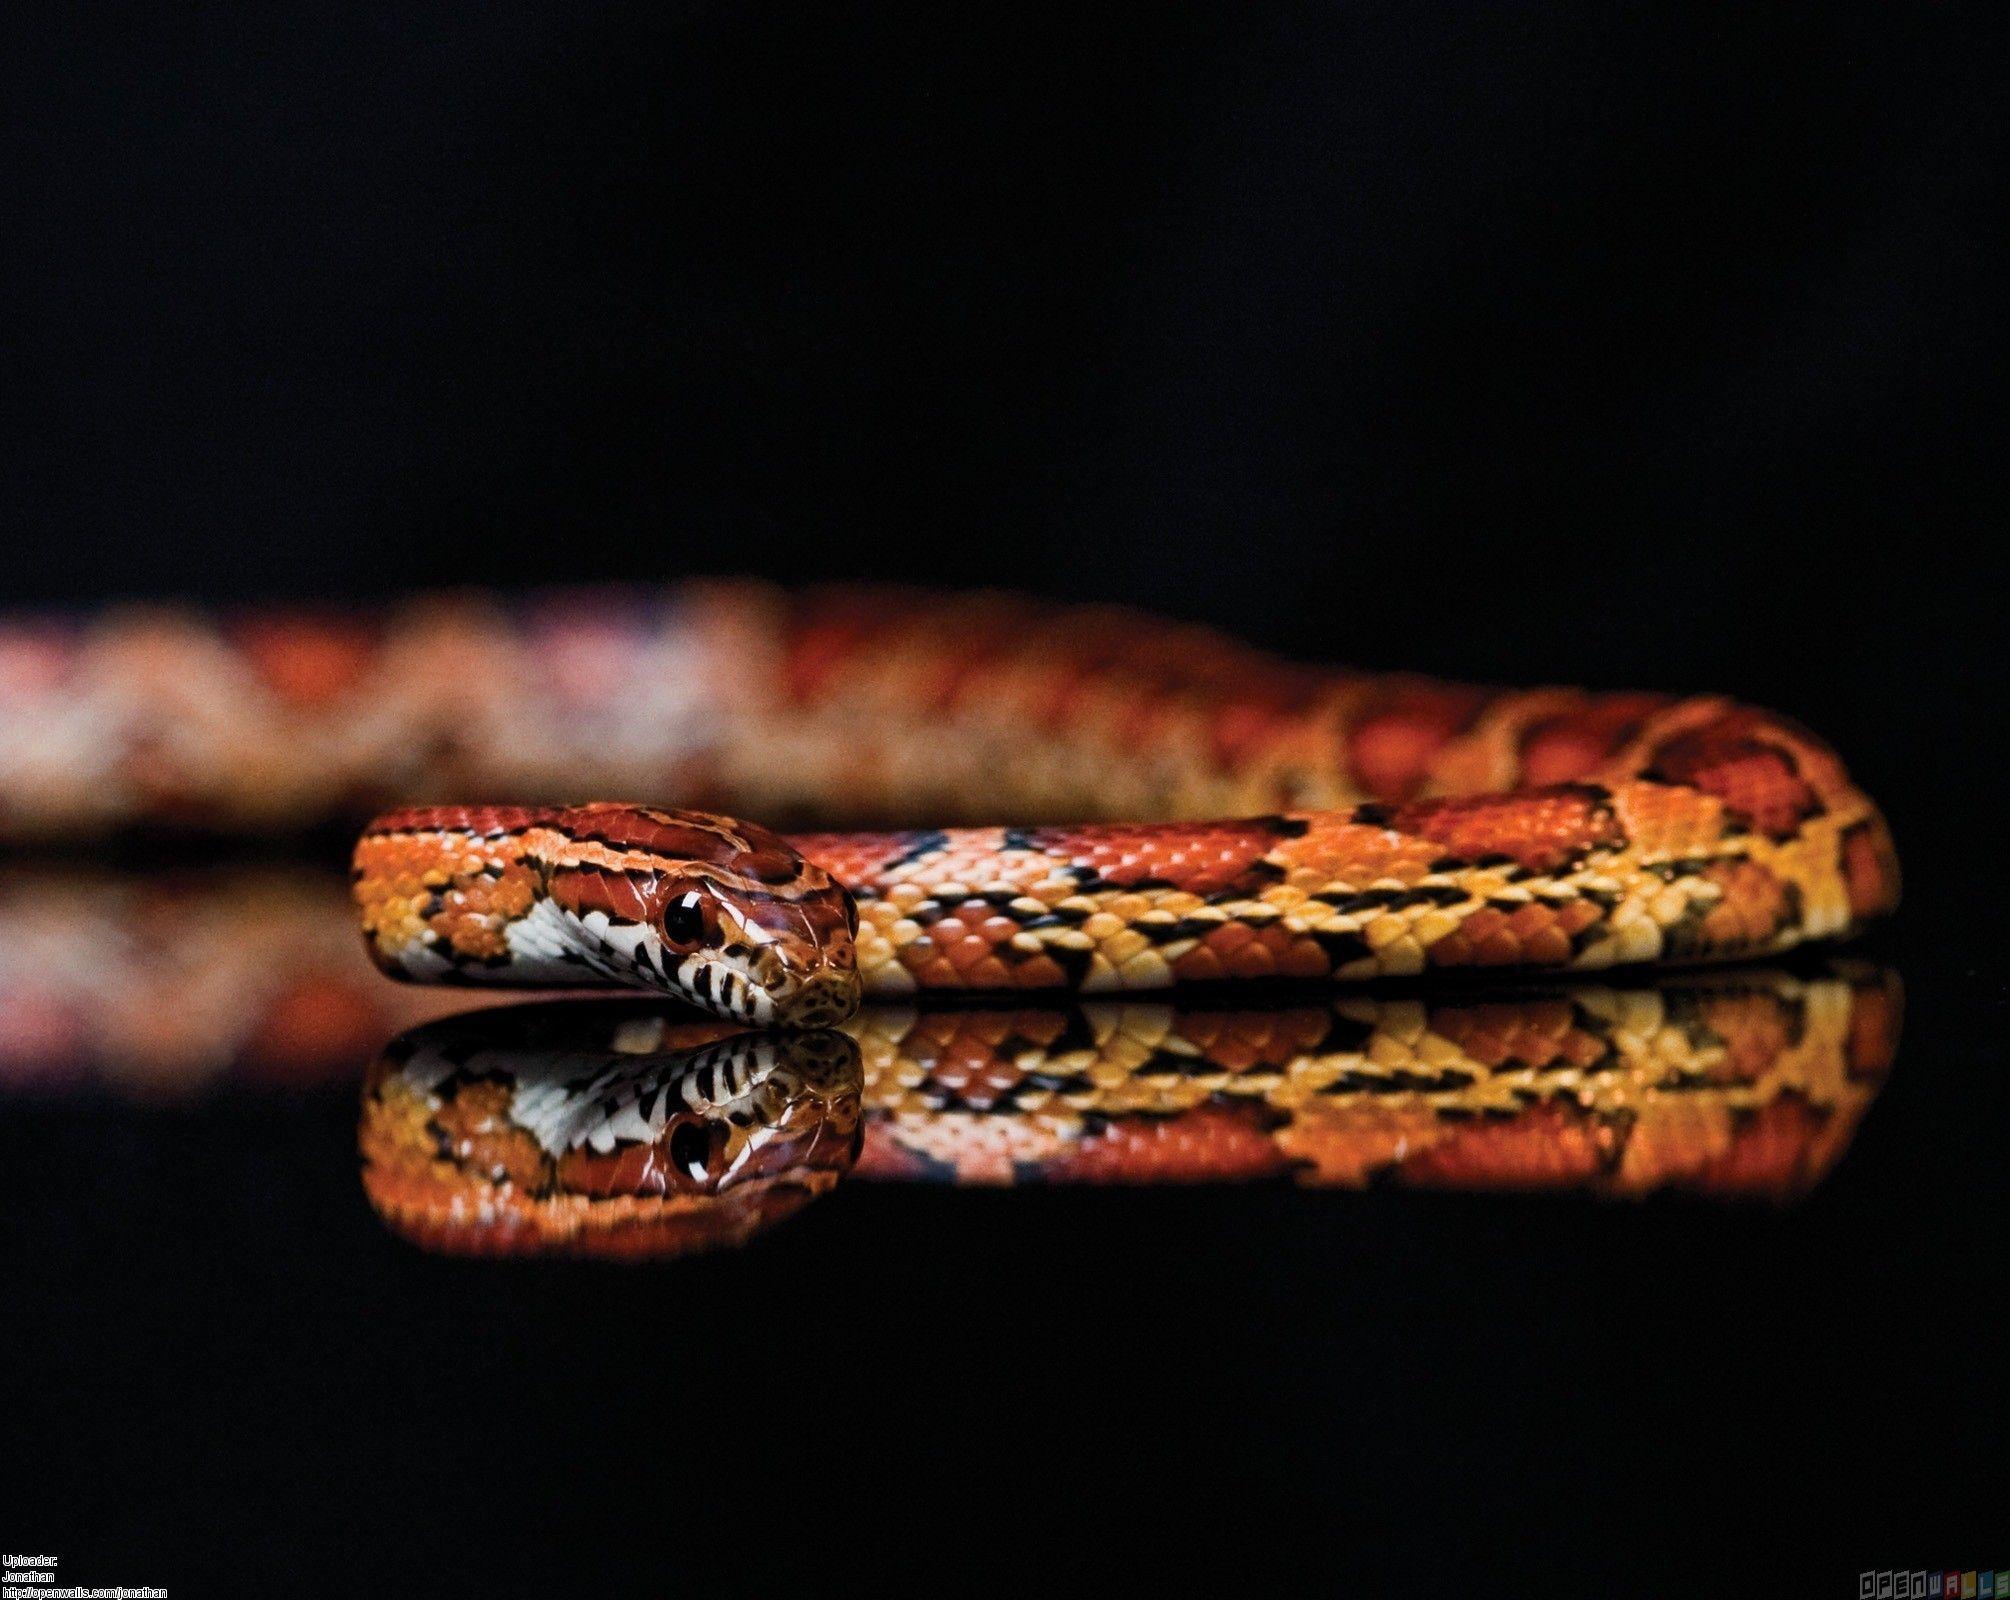 mirrored snake. Snake wallpaper, Snake story, Corn snake